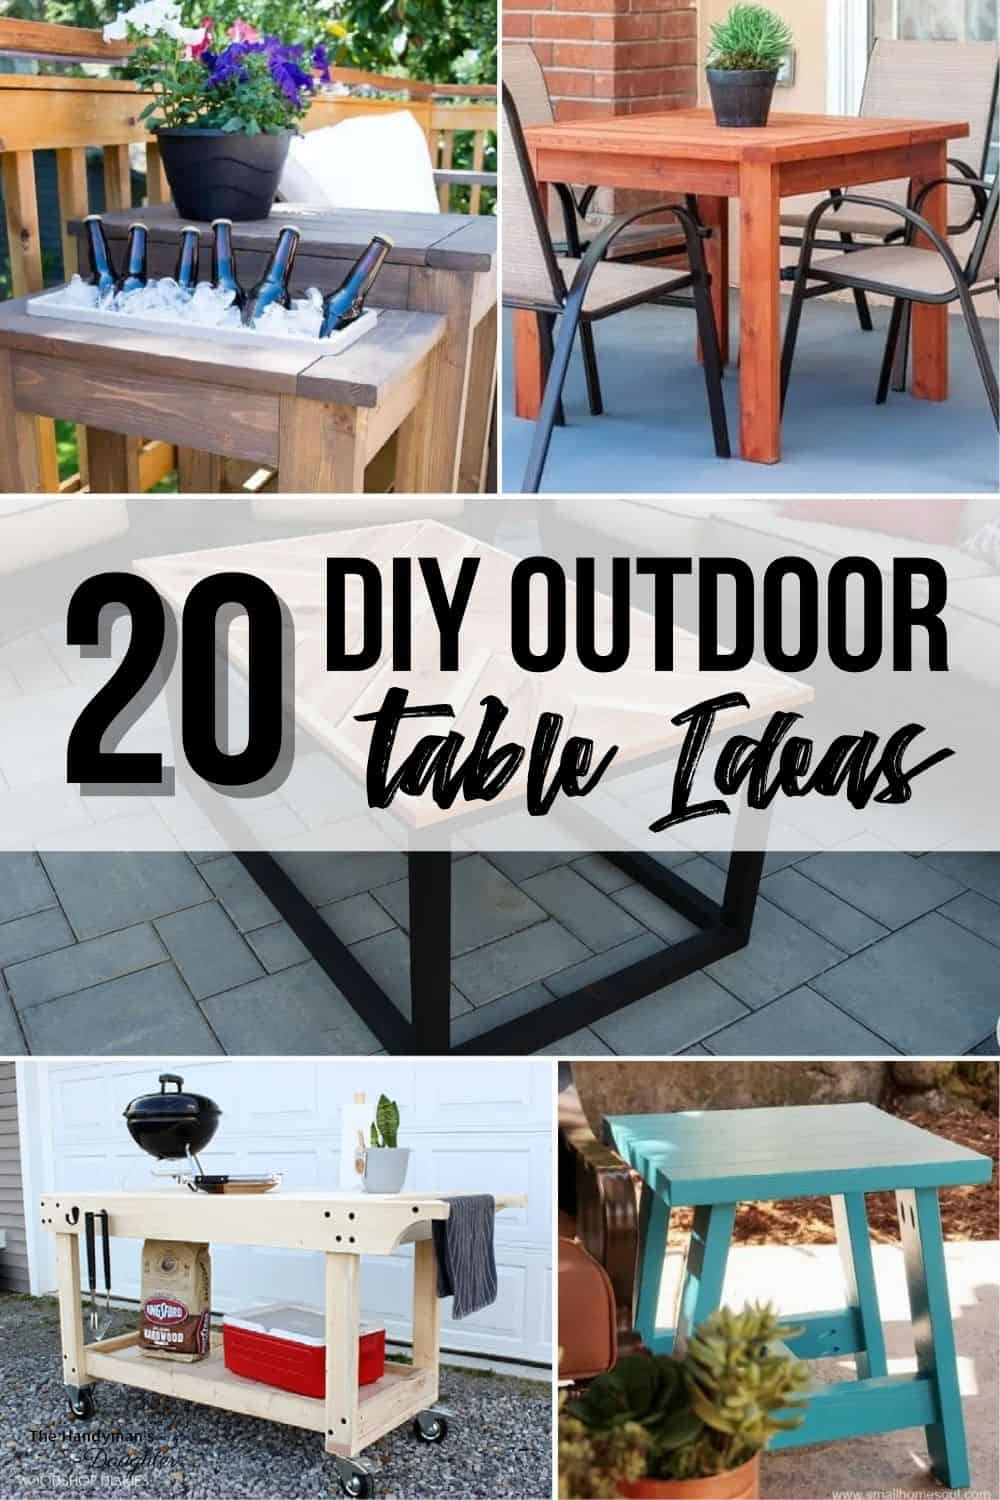 DIY outdoor table ideas